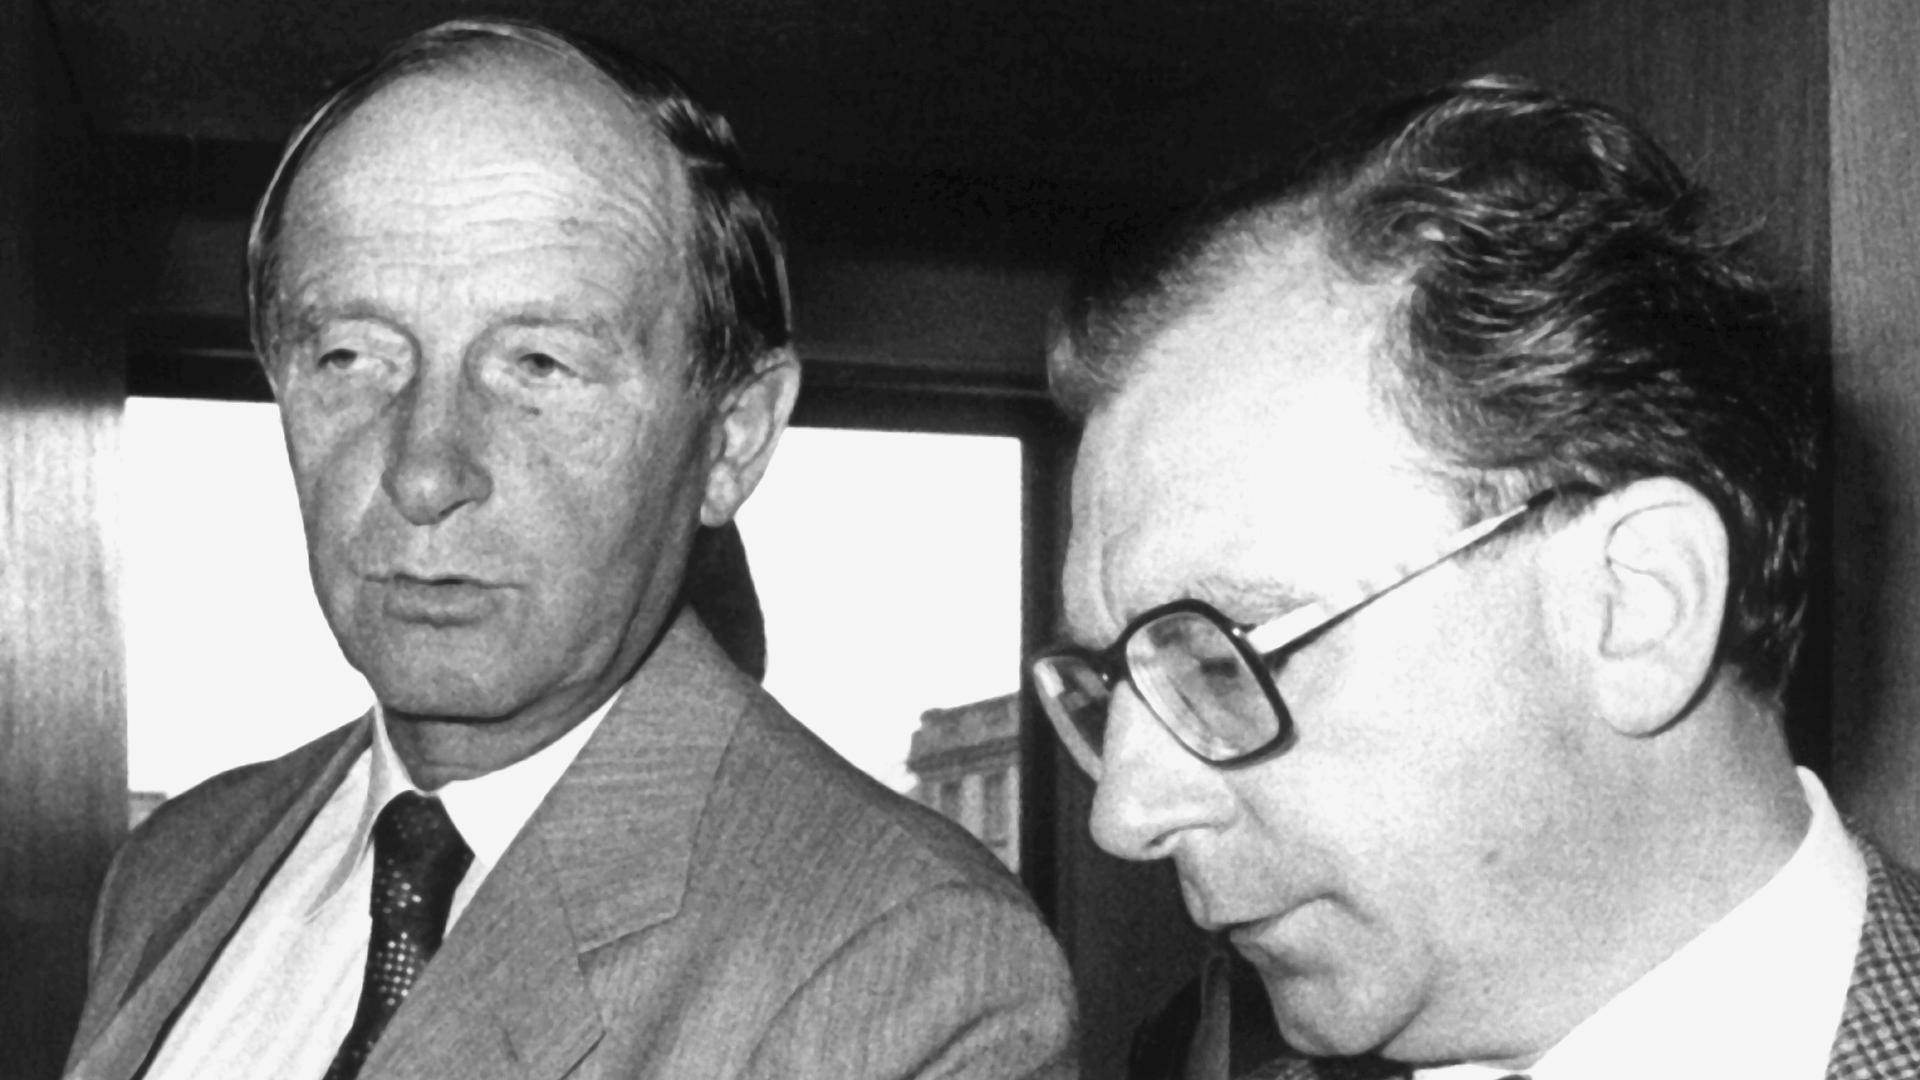 Ende einer Ära: Nach zwölf Jahren im Amt des Ministerpräsidenten von Baden-Württemberg trat Hans Filbinger (links) am 7. August 1978 zurück. Nachfolger wurde sein bisheriger Innenminister Lothar Späth (rechts).